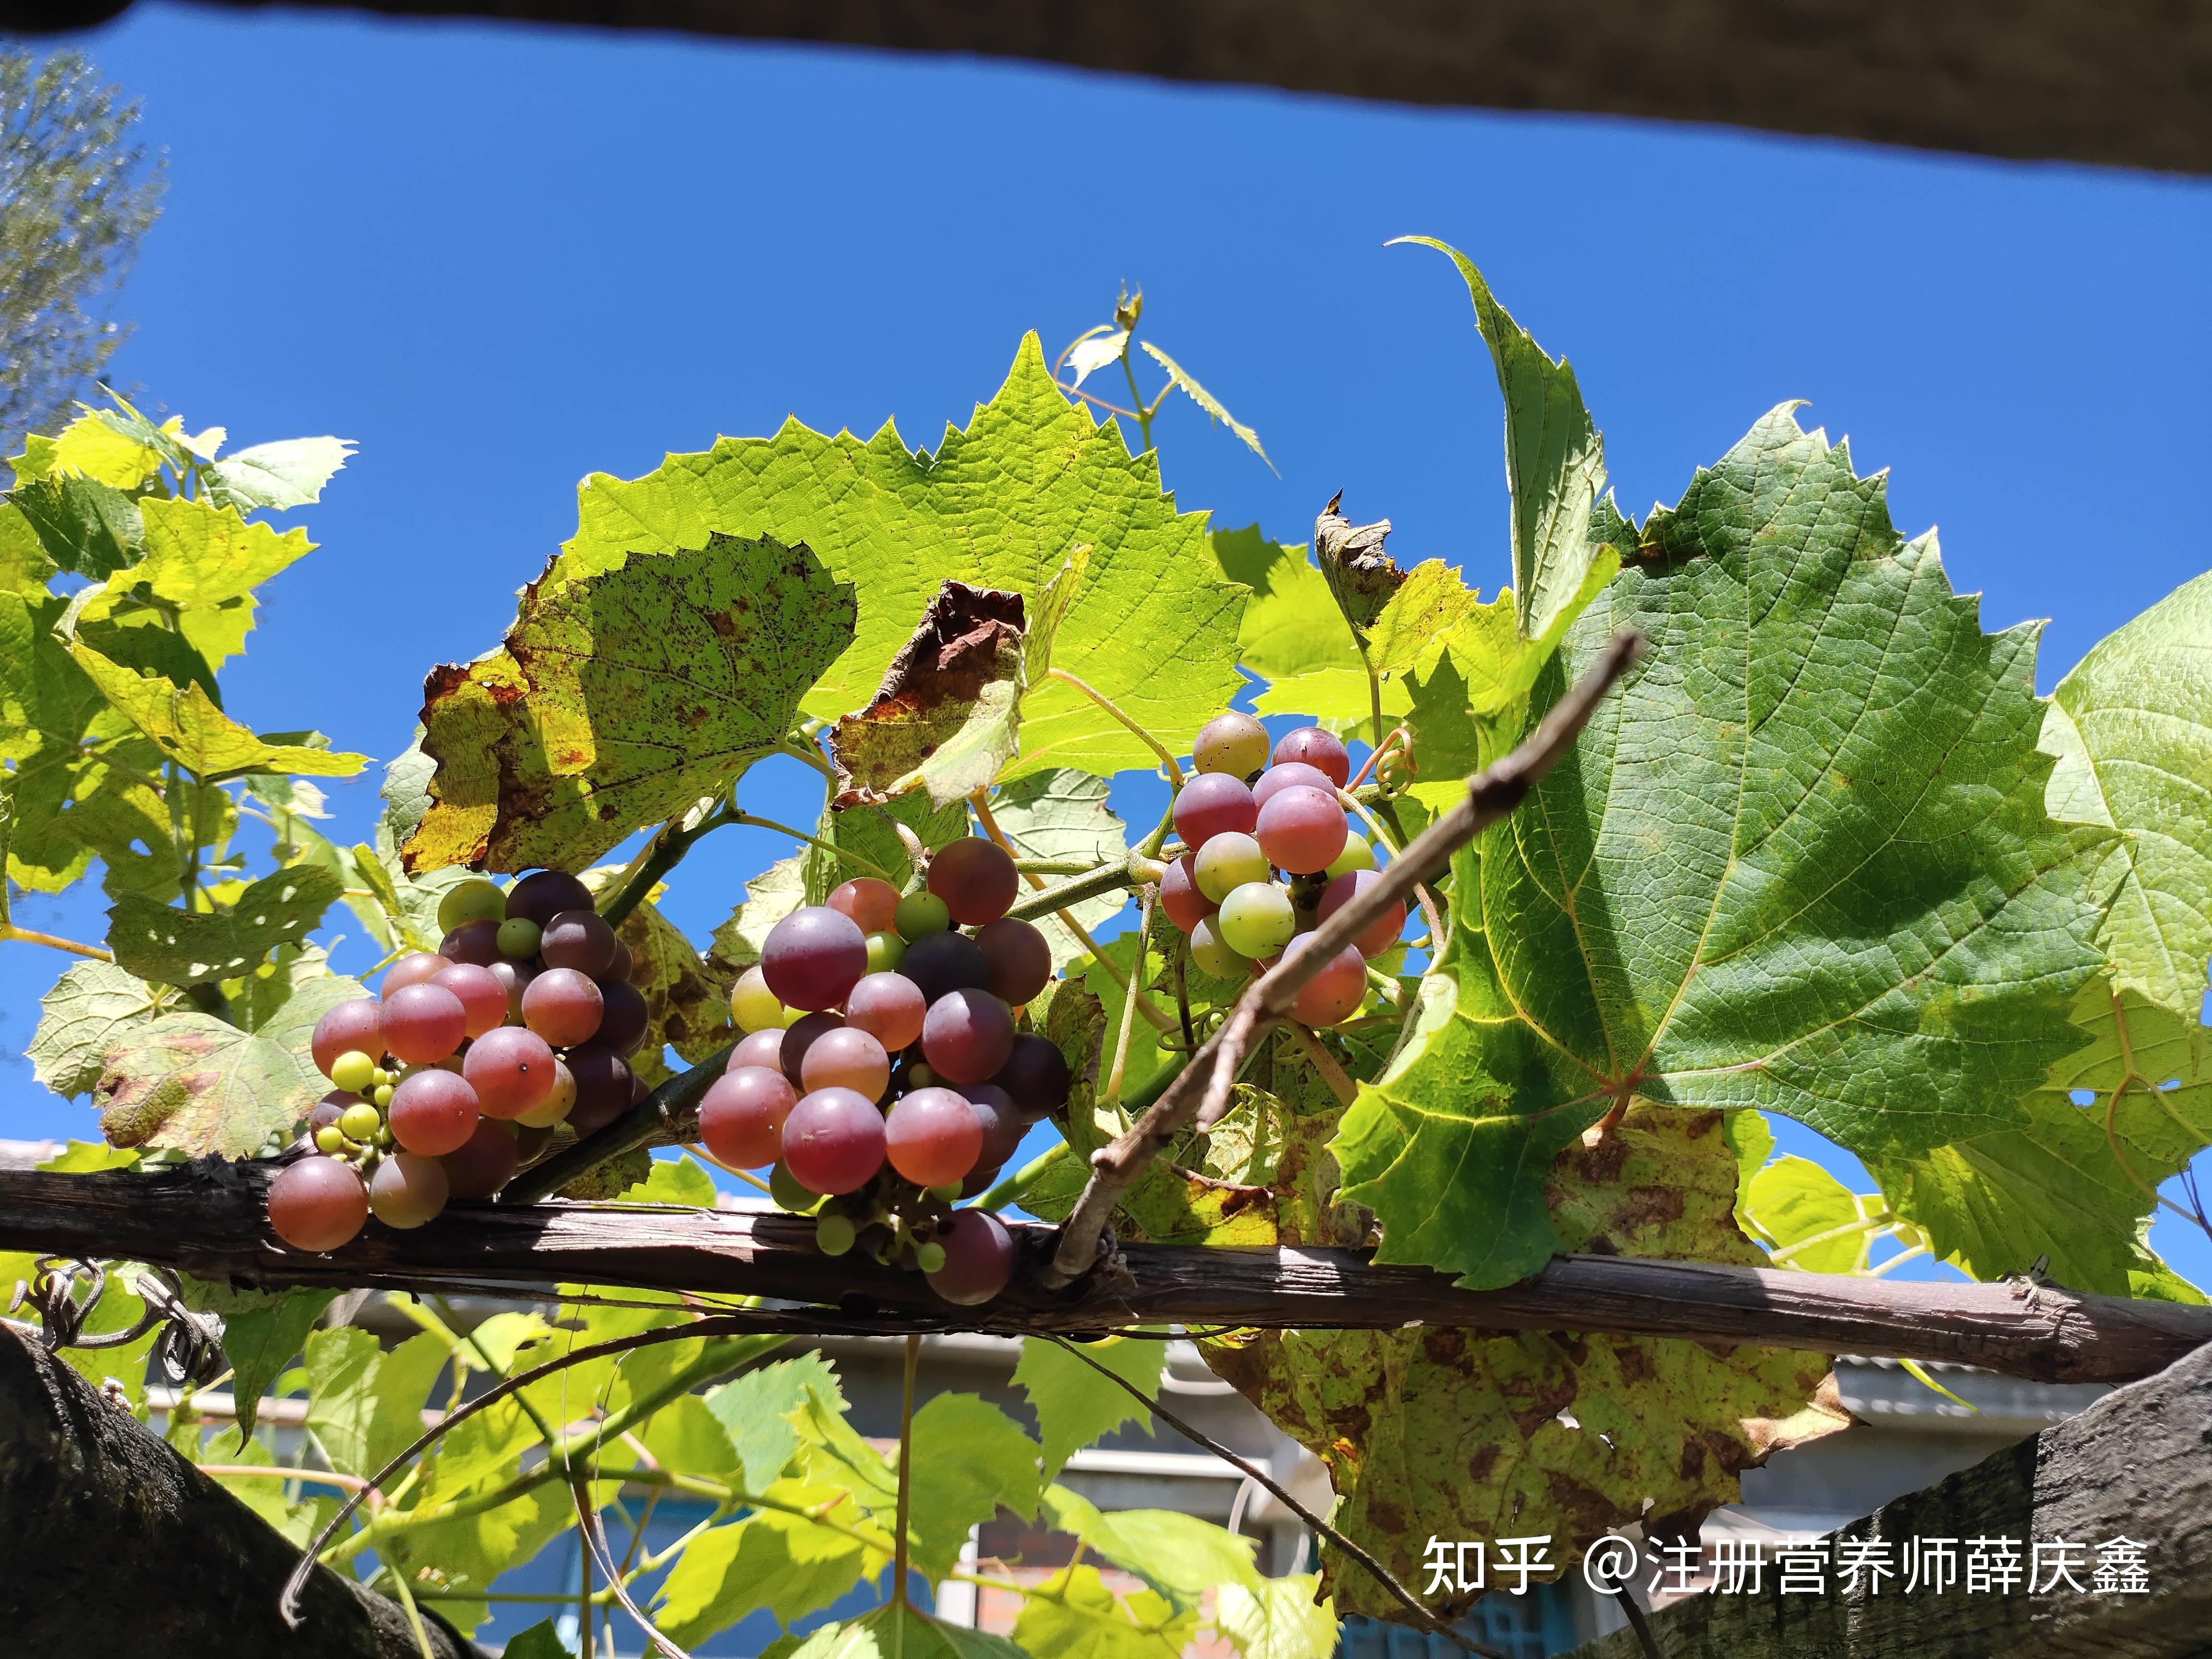 唐三镜黄丽娜: 家庭自制葡萄酒的酿造方法详细介绍